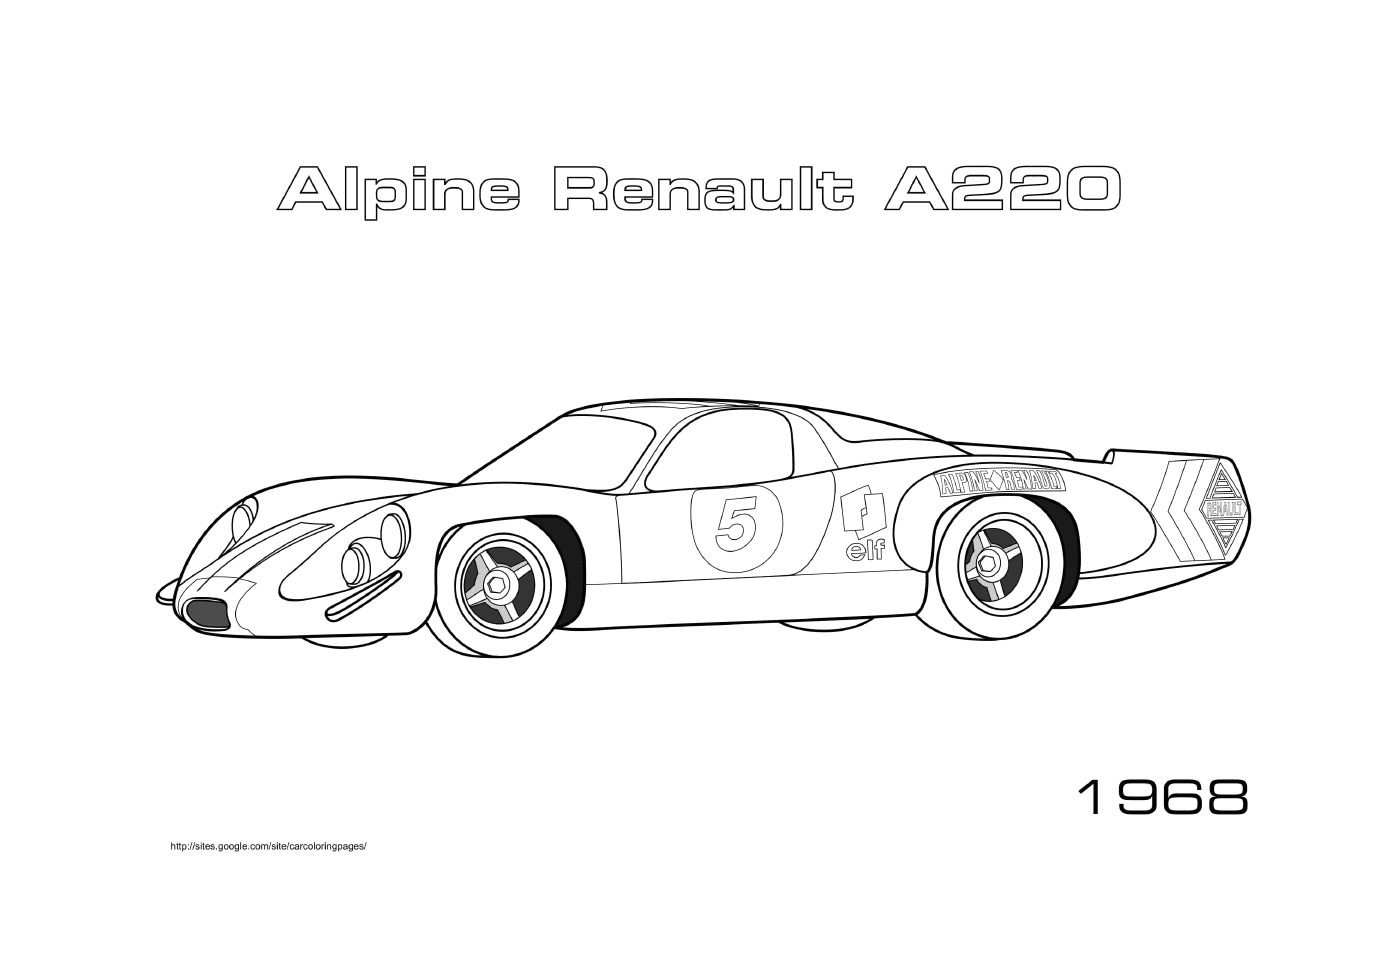  Renault Alpino A220 de 1968 